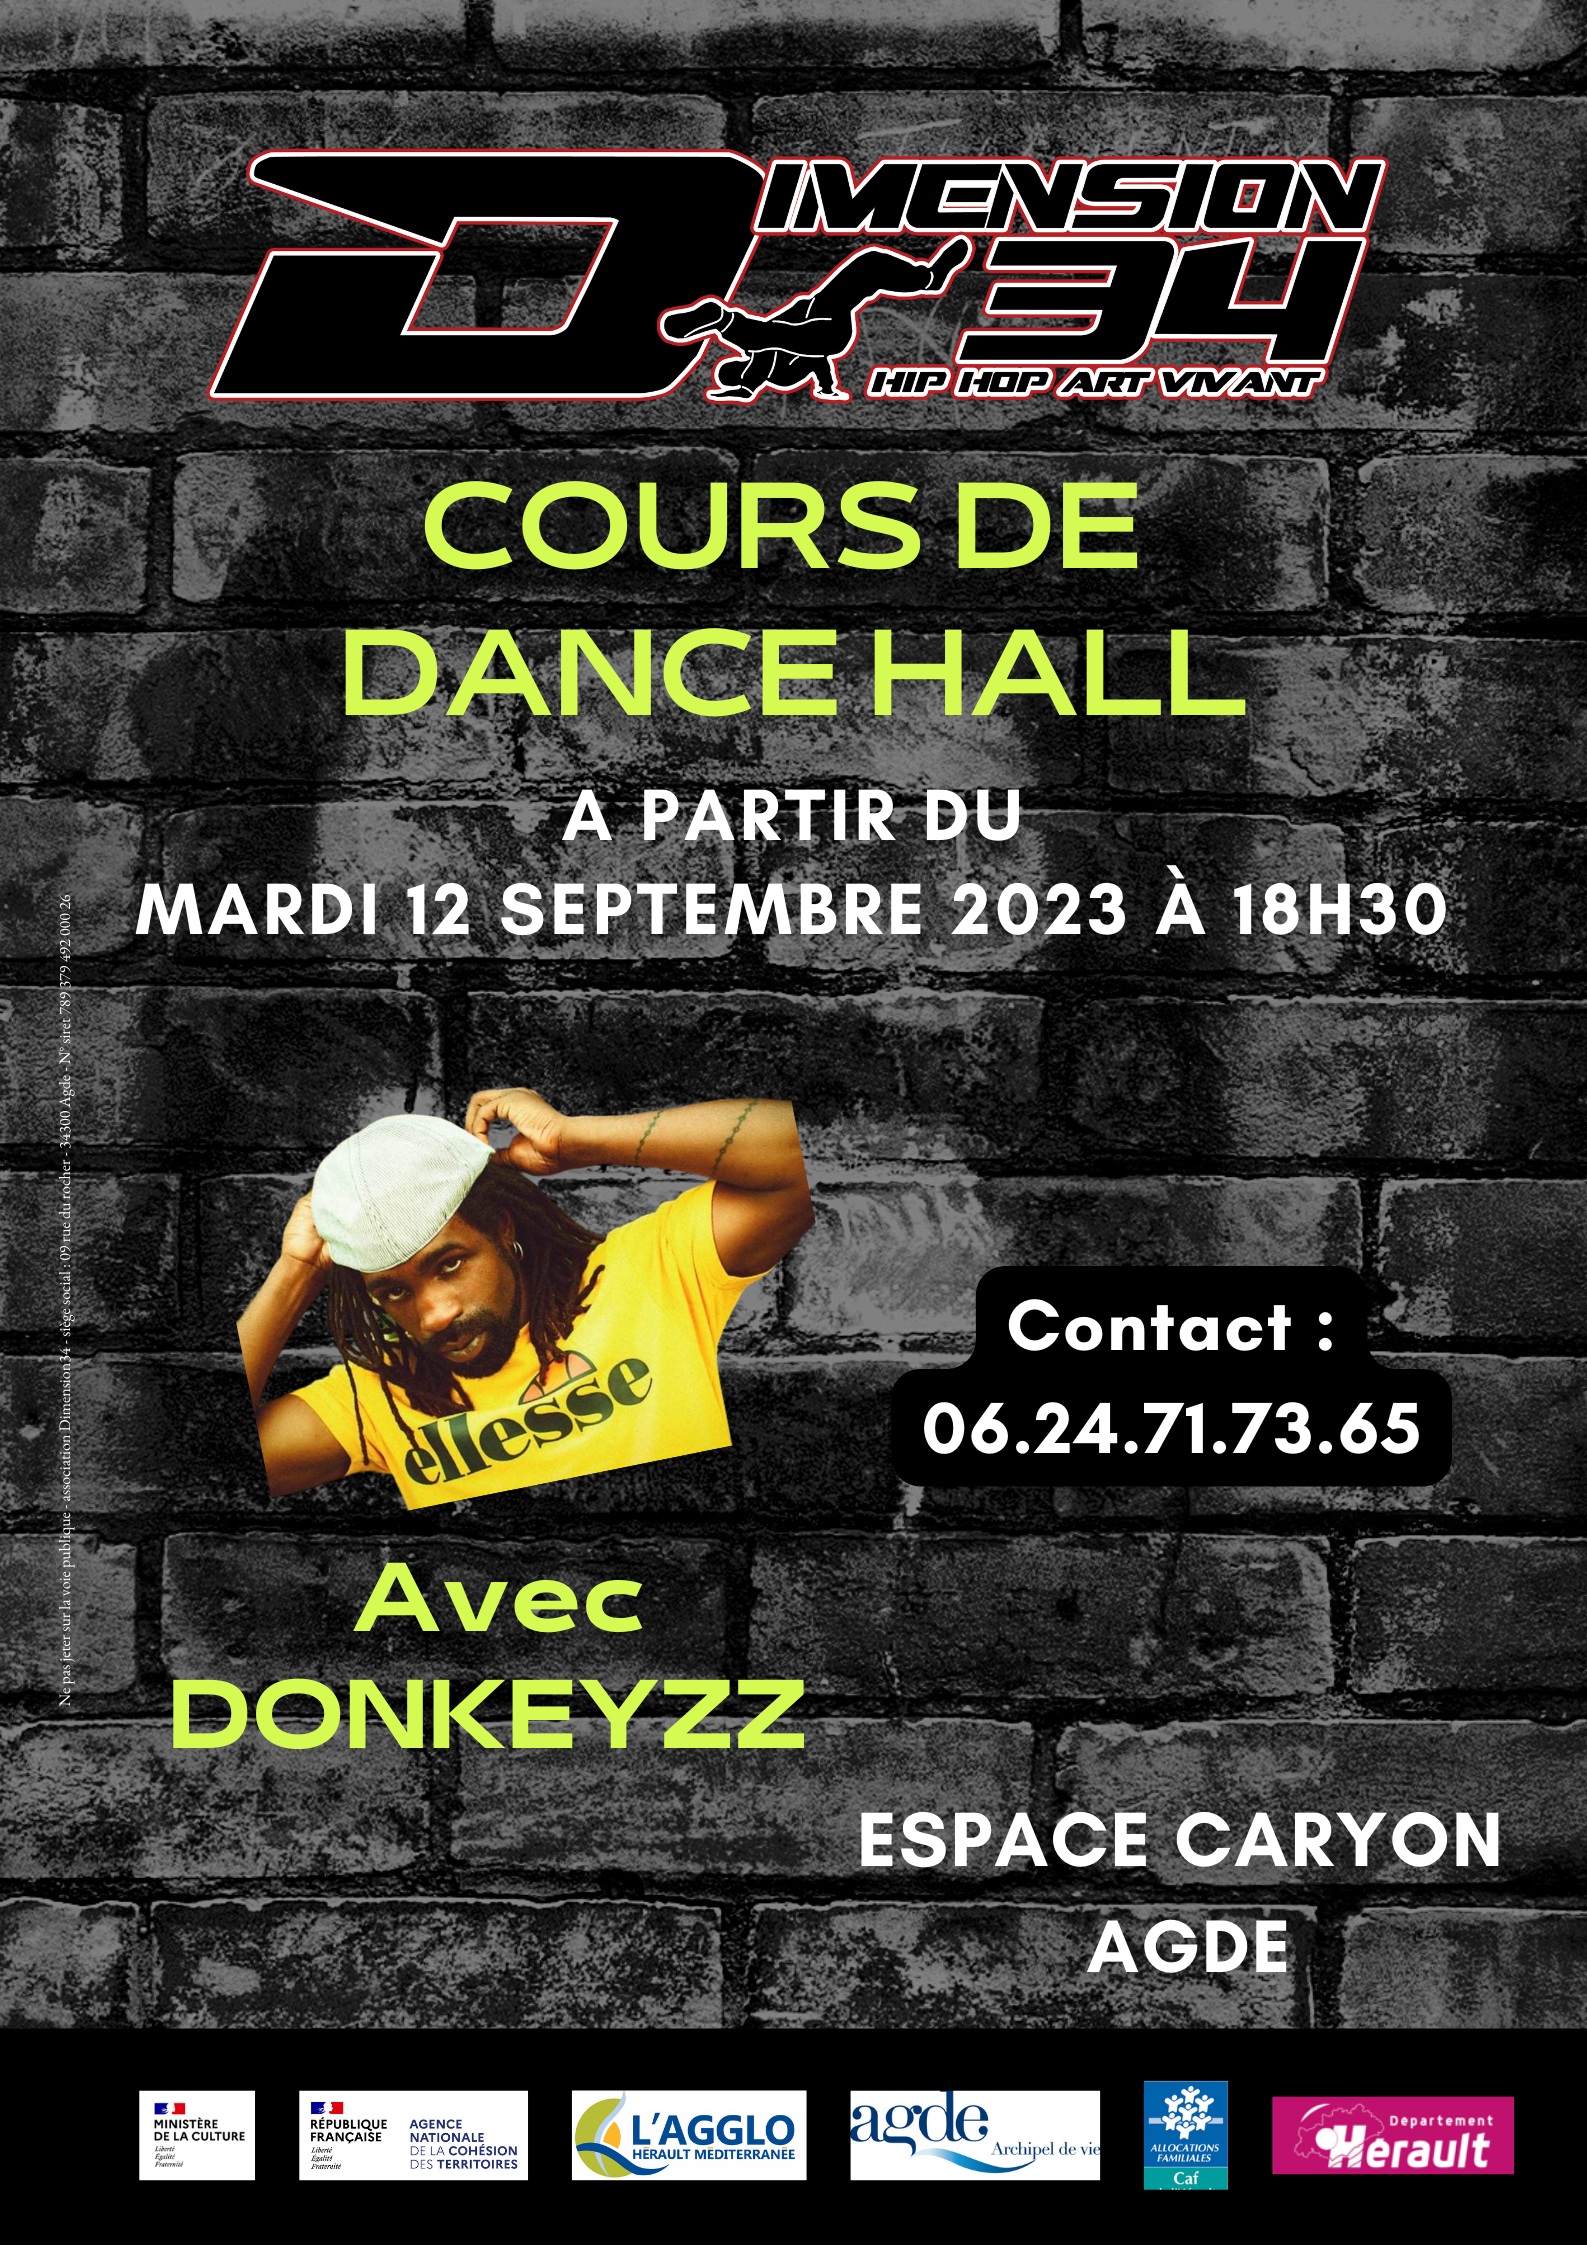 Danse Agde - Du nouveau chez Dimension 34, découvrez le rythme irrésistible du Dancehall.